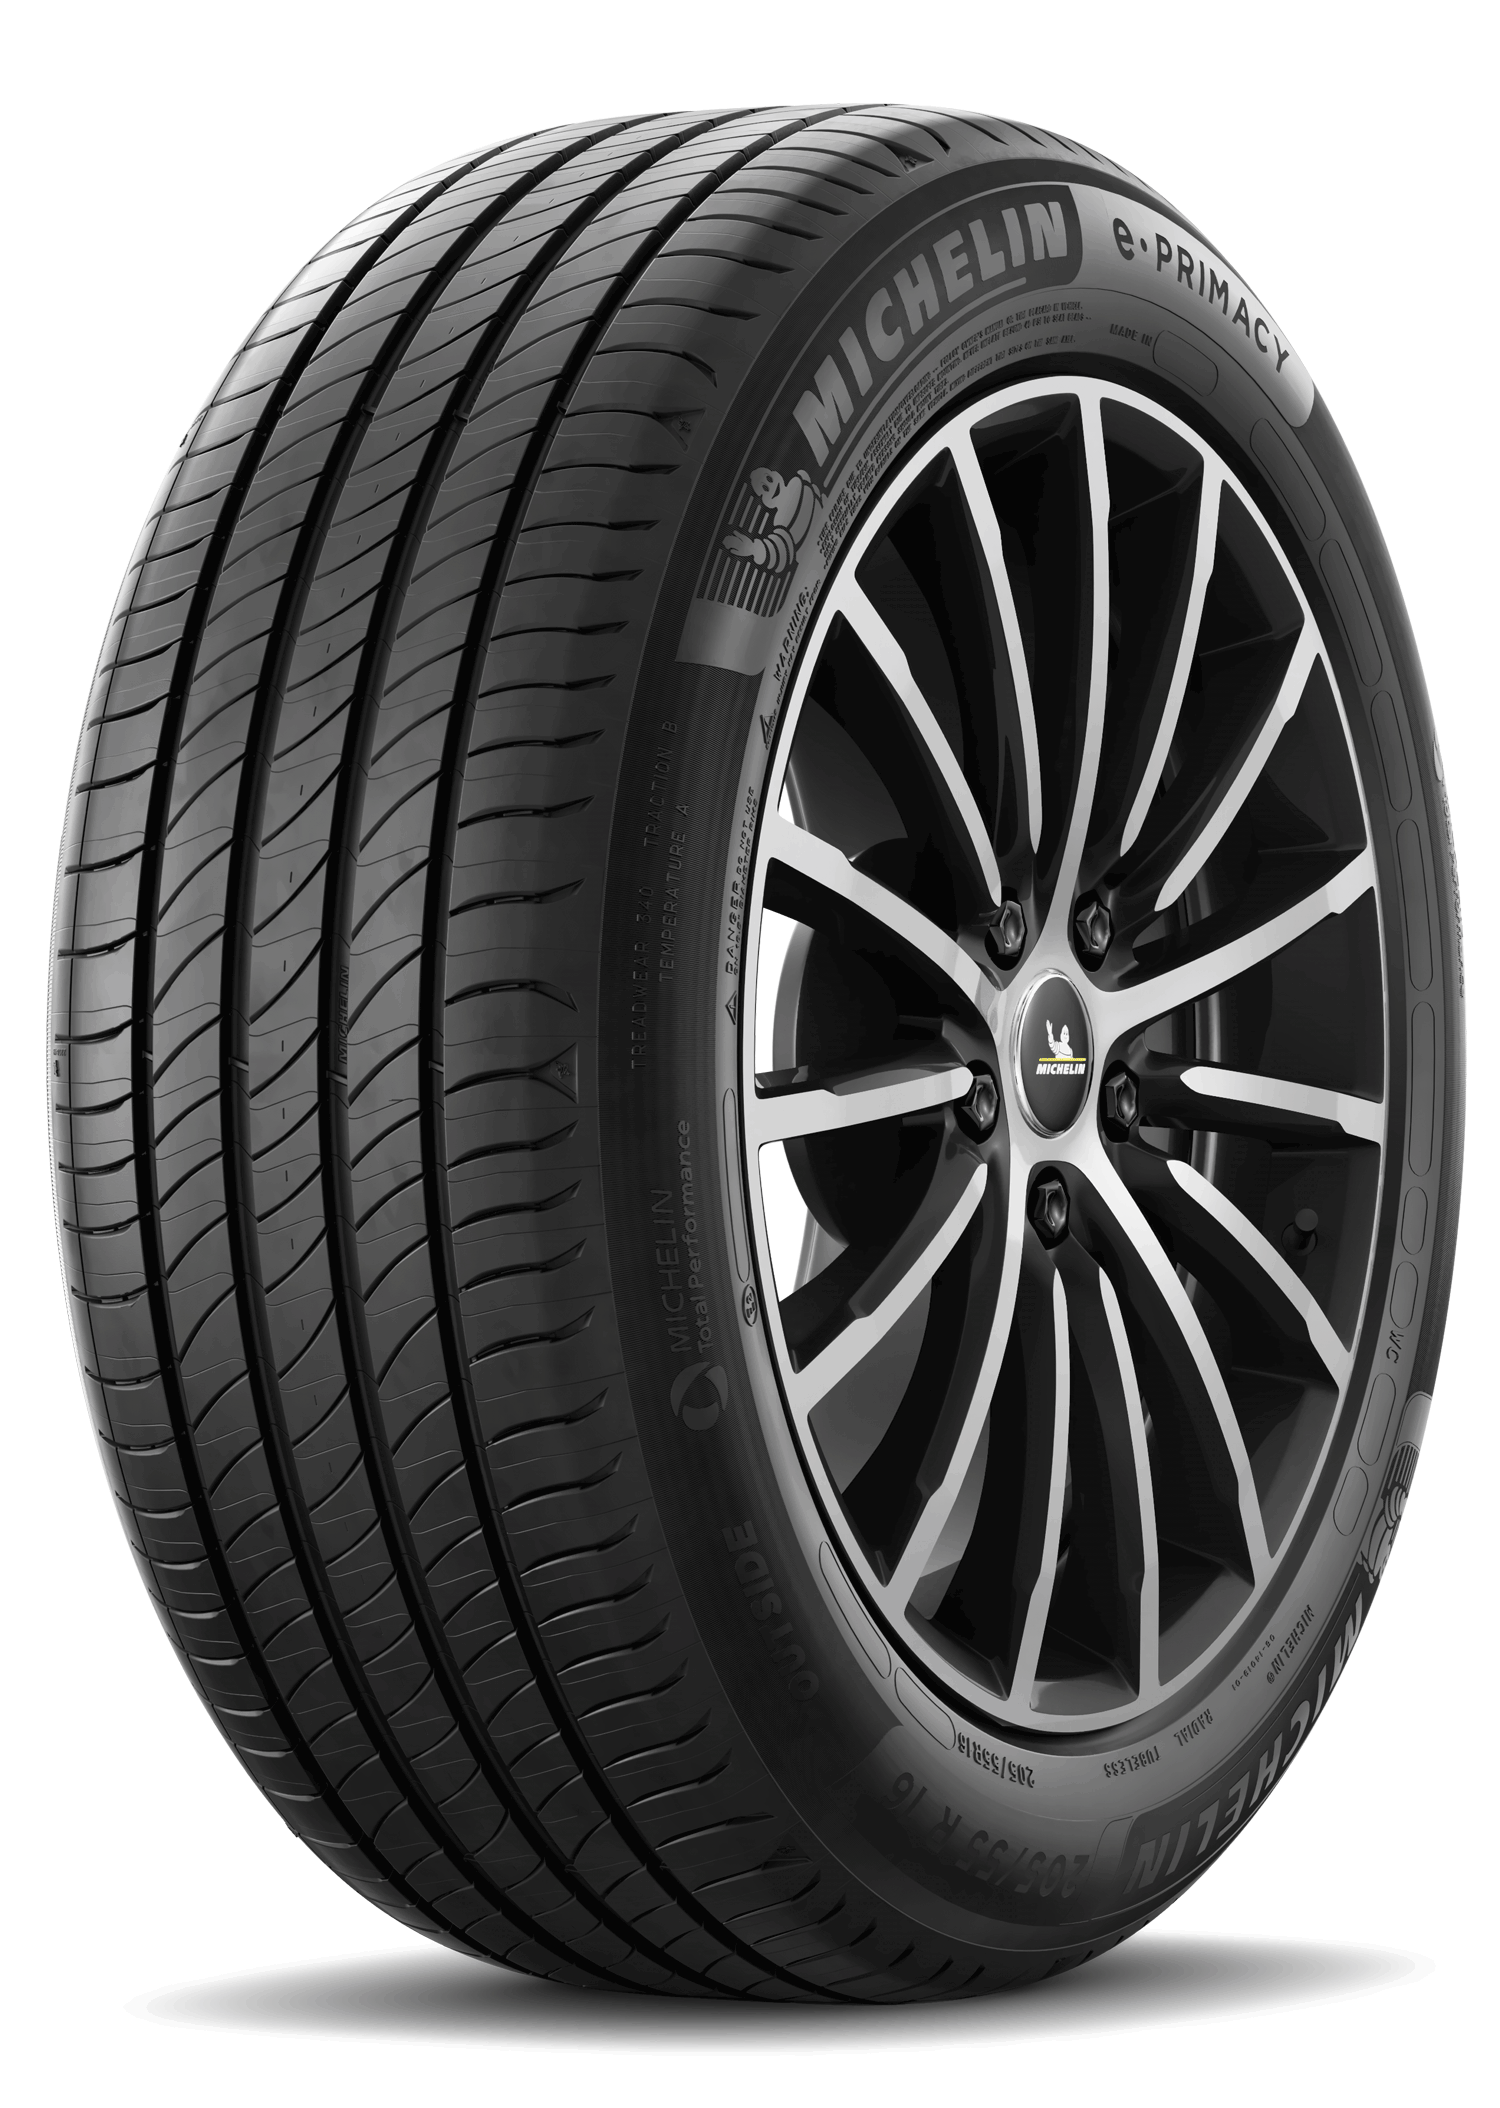 Gomme Nuove Michelin 205/55 R16 91H E PRIMACY pneumatici nuovi Estivo